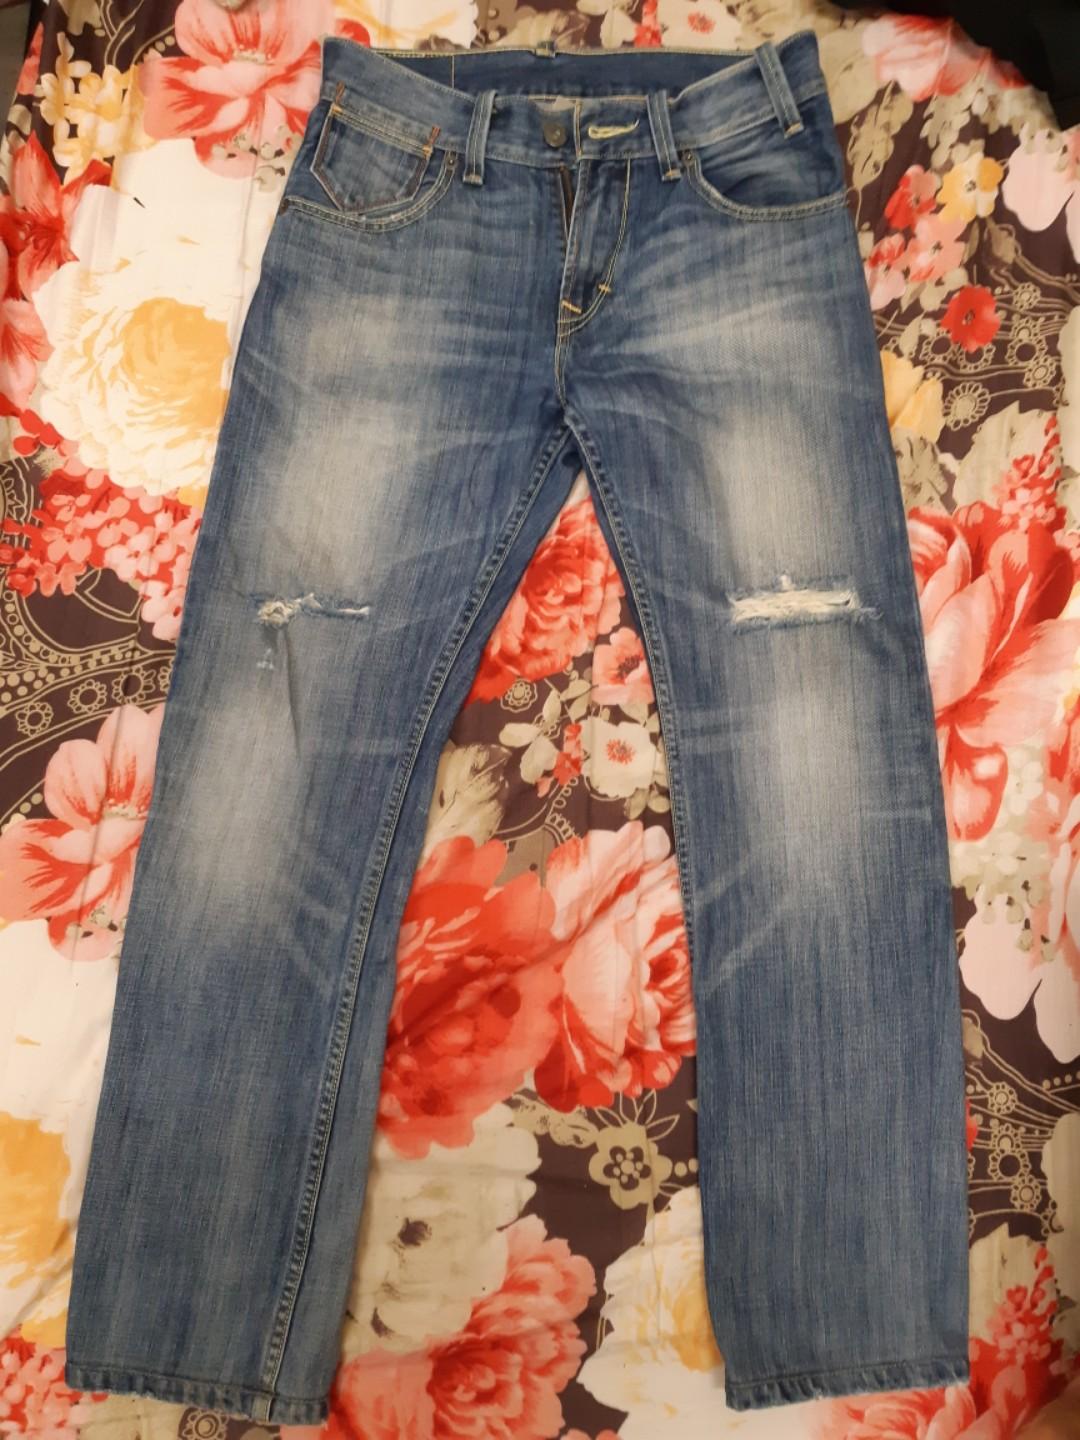 levis jeans 729